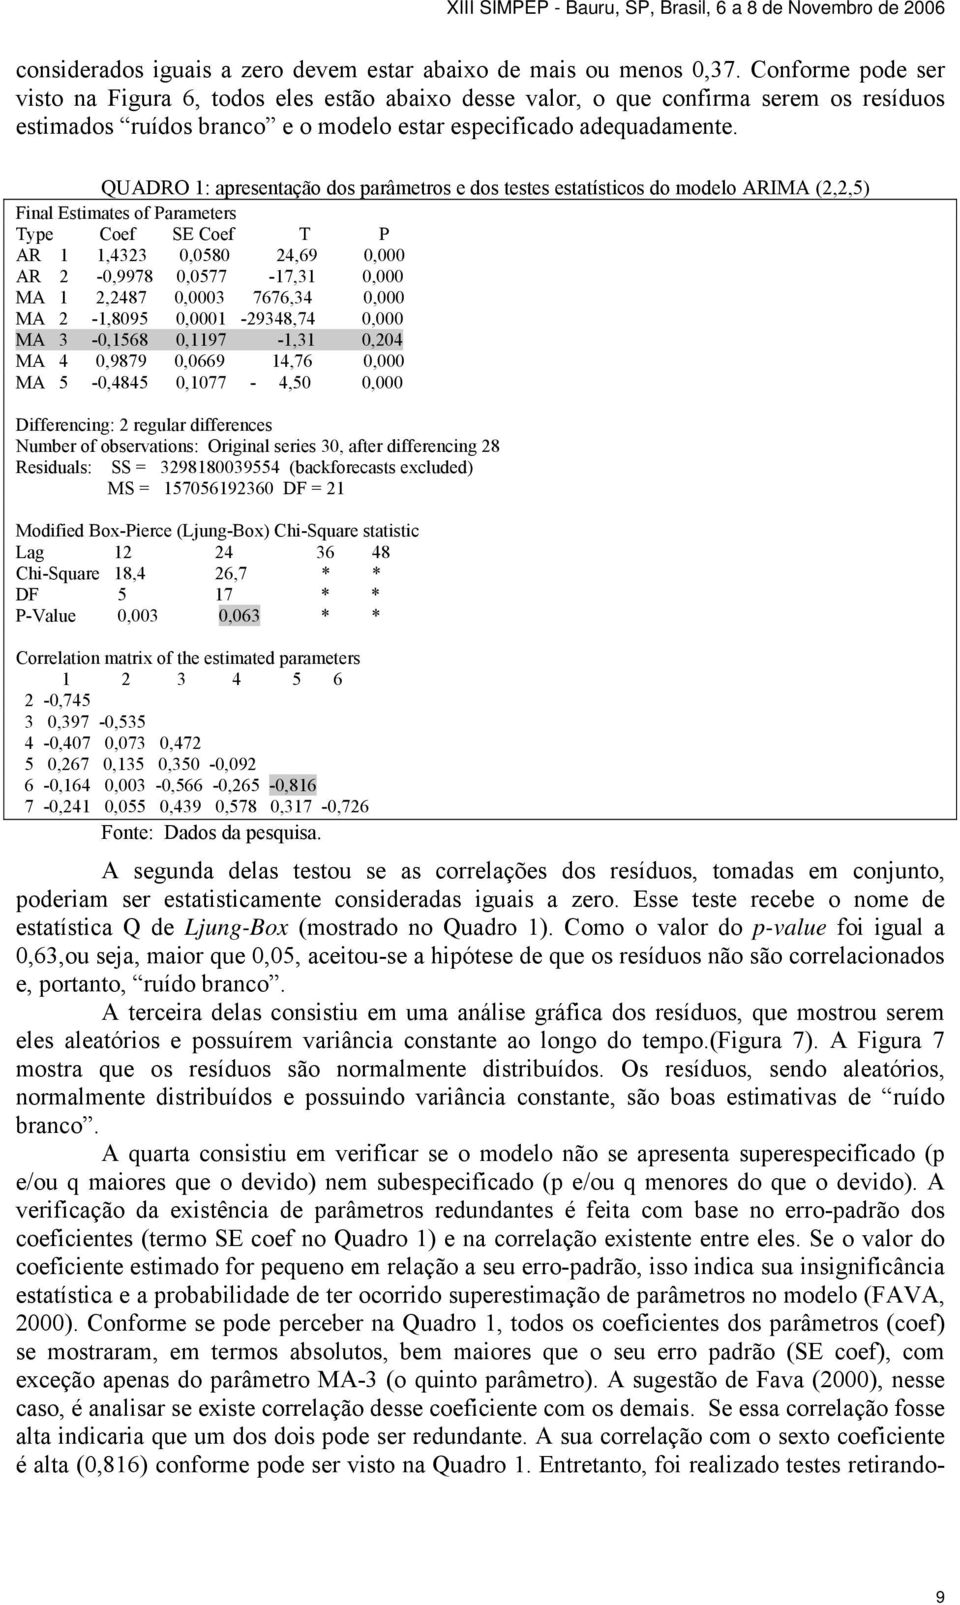 QUADRO 1: apresentação dos parâmetros e dos testes estatísticos do modelo ARIMA (2,2,5) Final Estimates of Parameters Type Coef SE Coef T P AR 1 1,4323 0,0580 24,69 0,000 AR 2-0,9978 0,0577-17,31